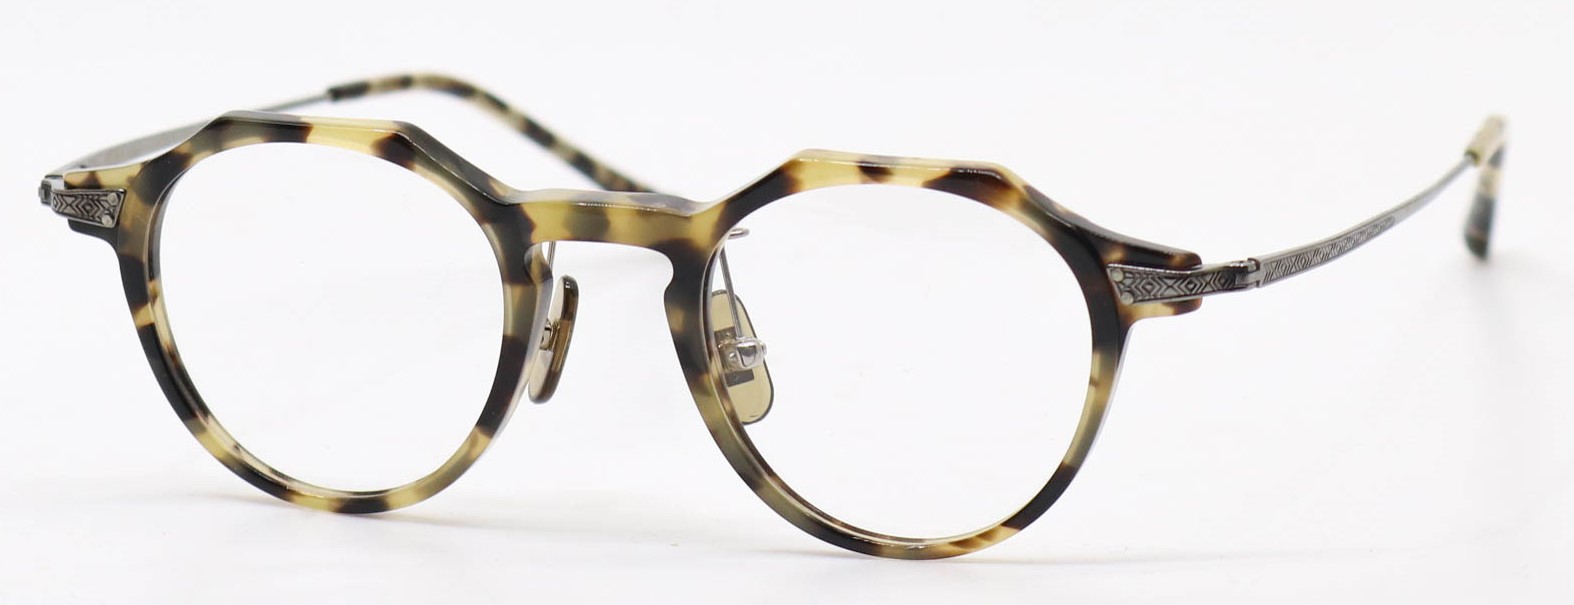 眼鏡のカラータイプC-2 Yellow-Tortoise/Gray